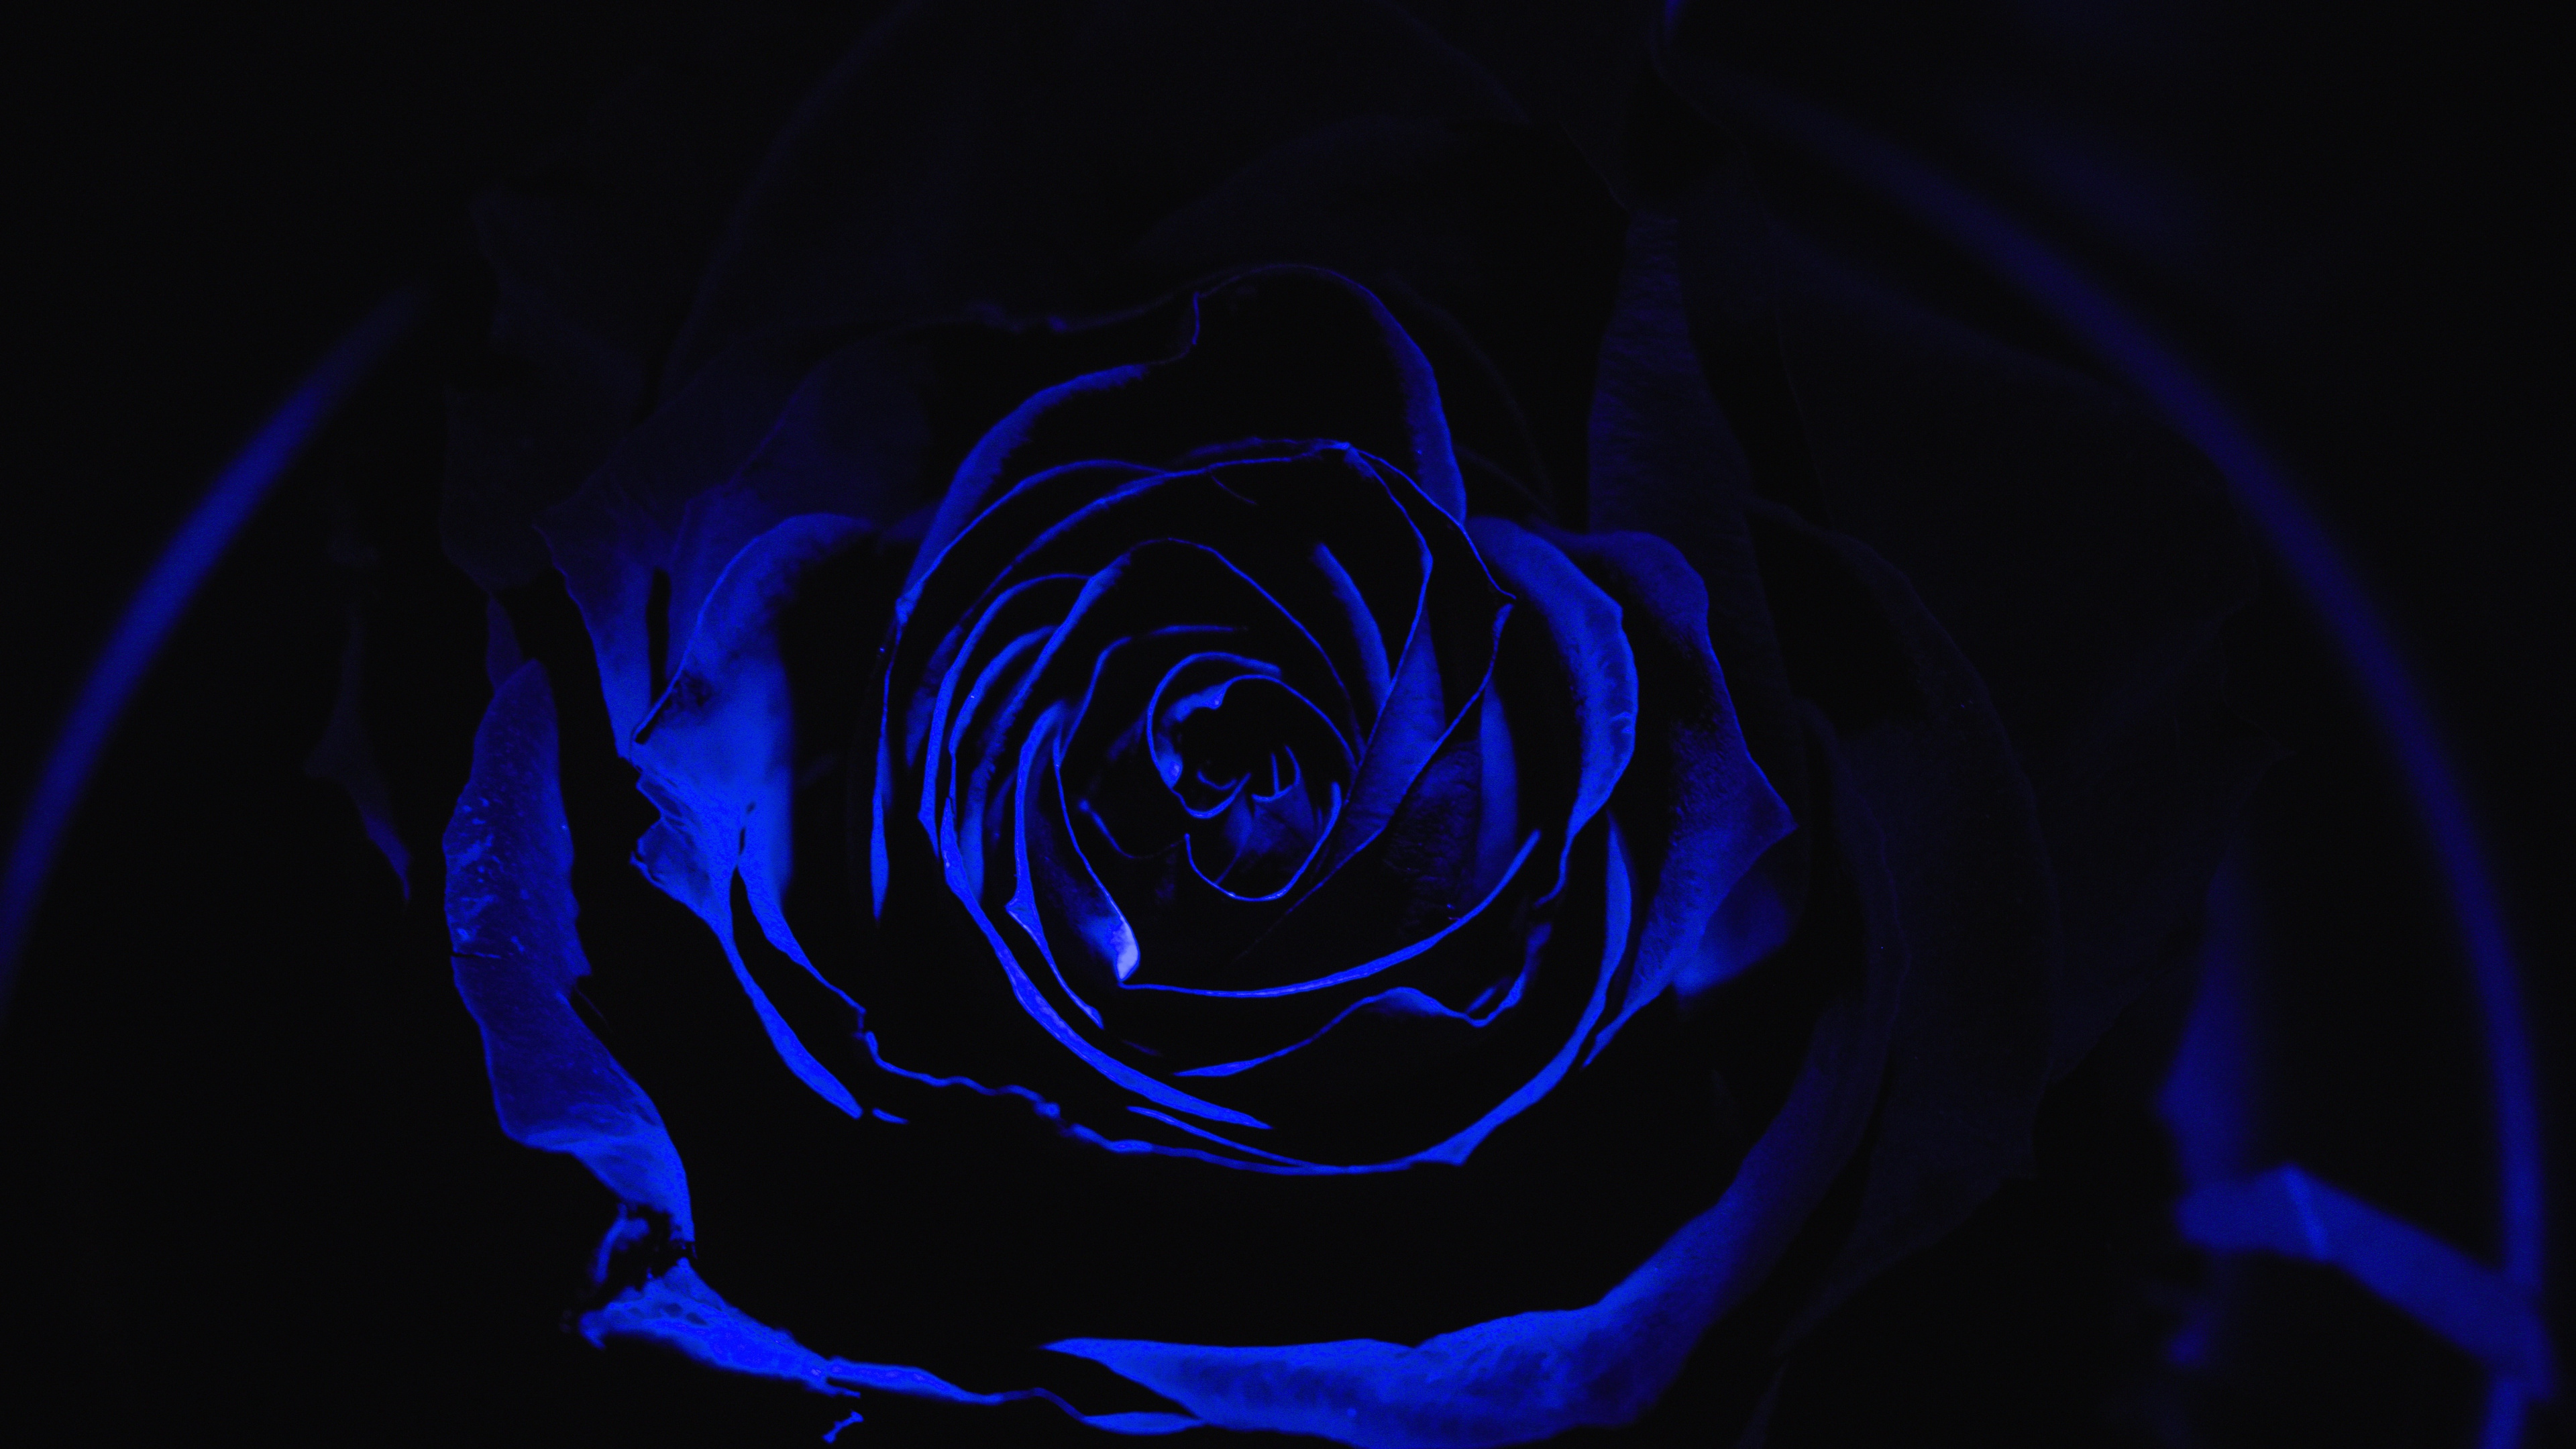 Rosa Azul en Fotografía de Cerca. Wallpaper in 3840x2160 Resolution